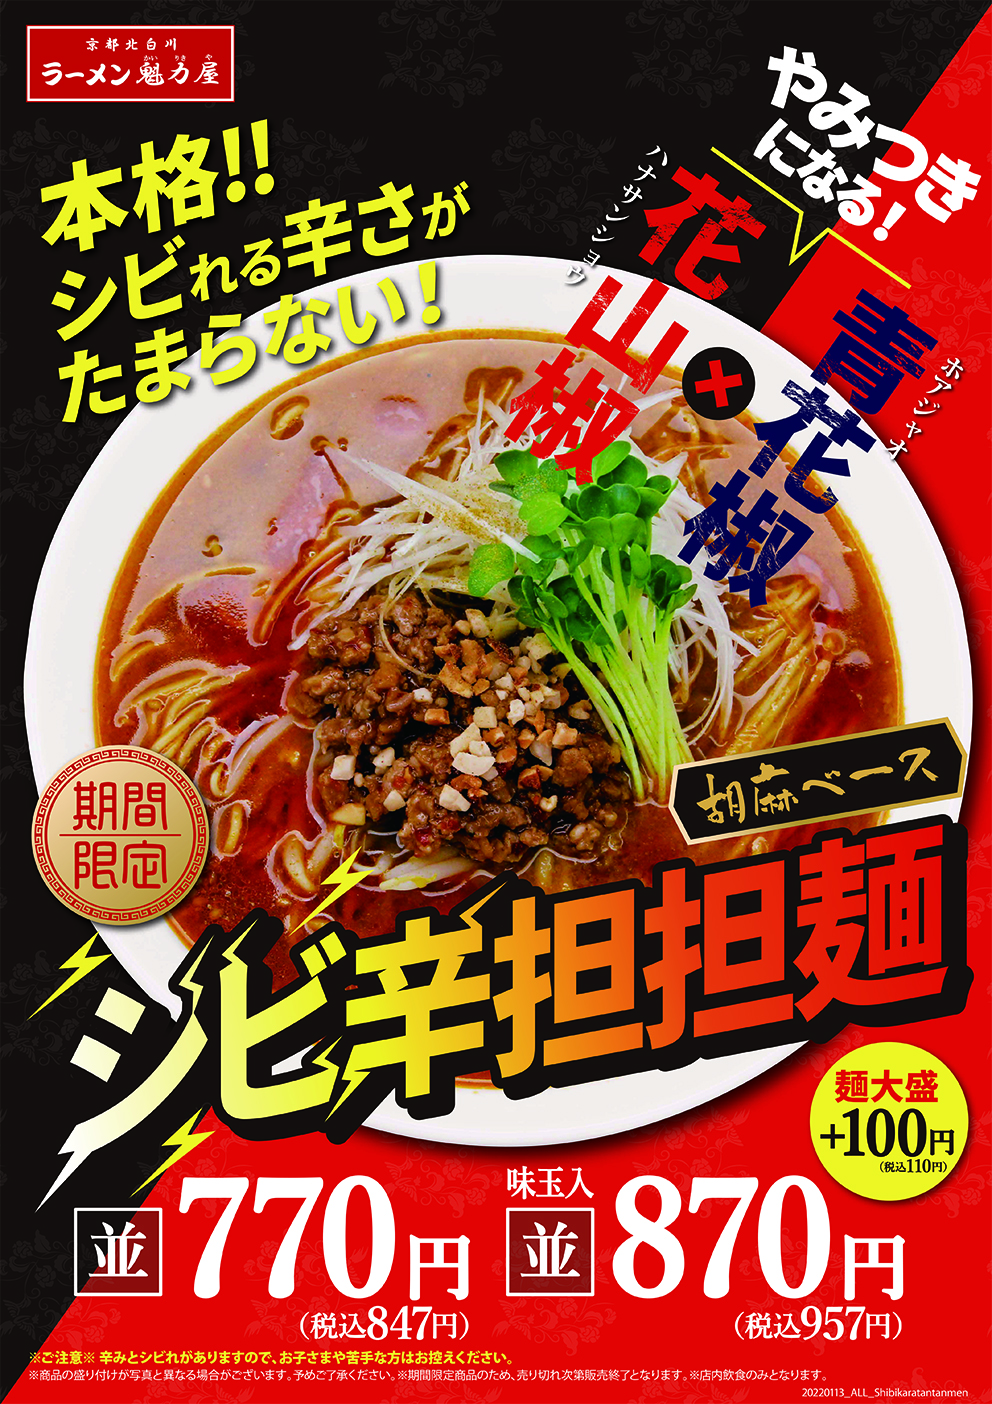 2022年1月13日販売開始「シビ辛担担麺」